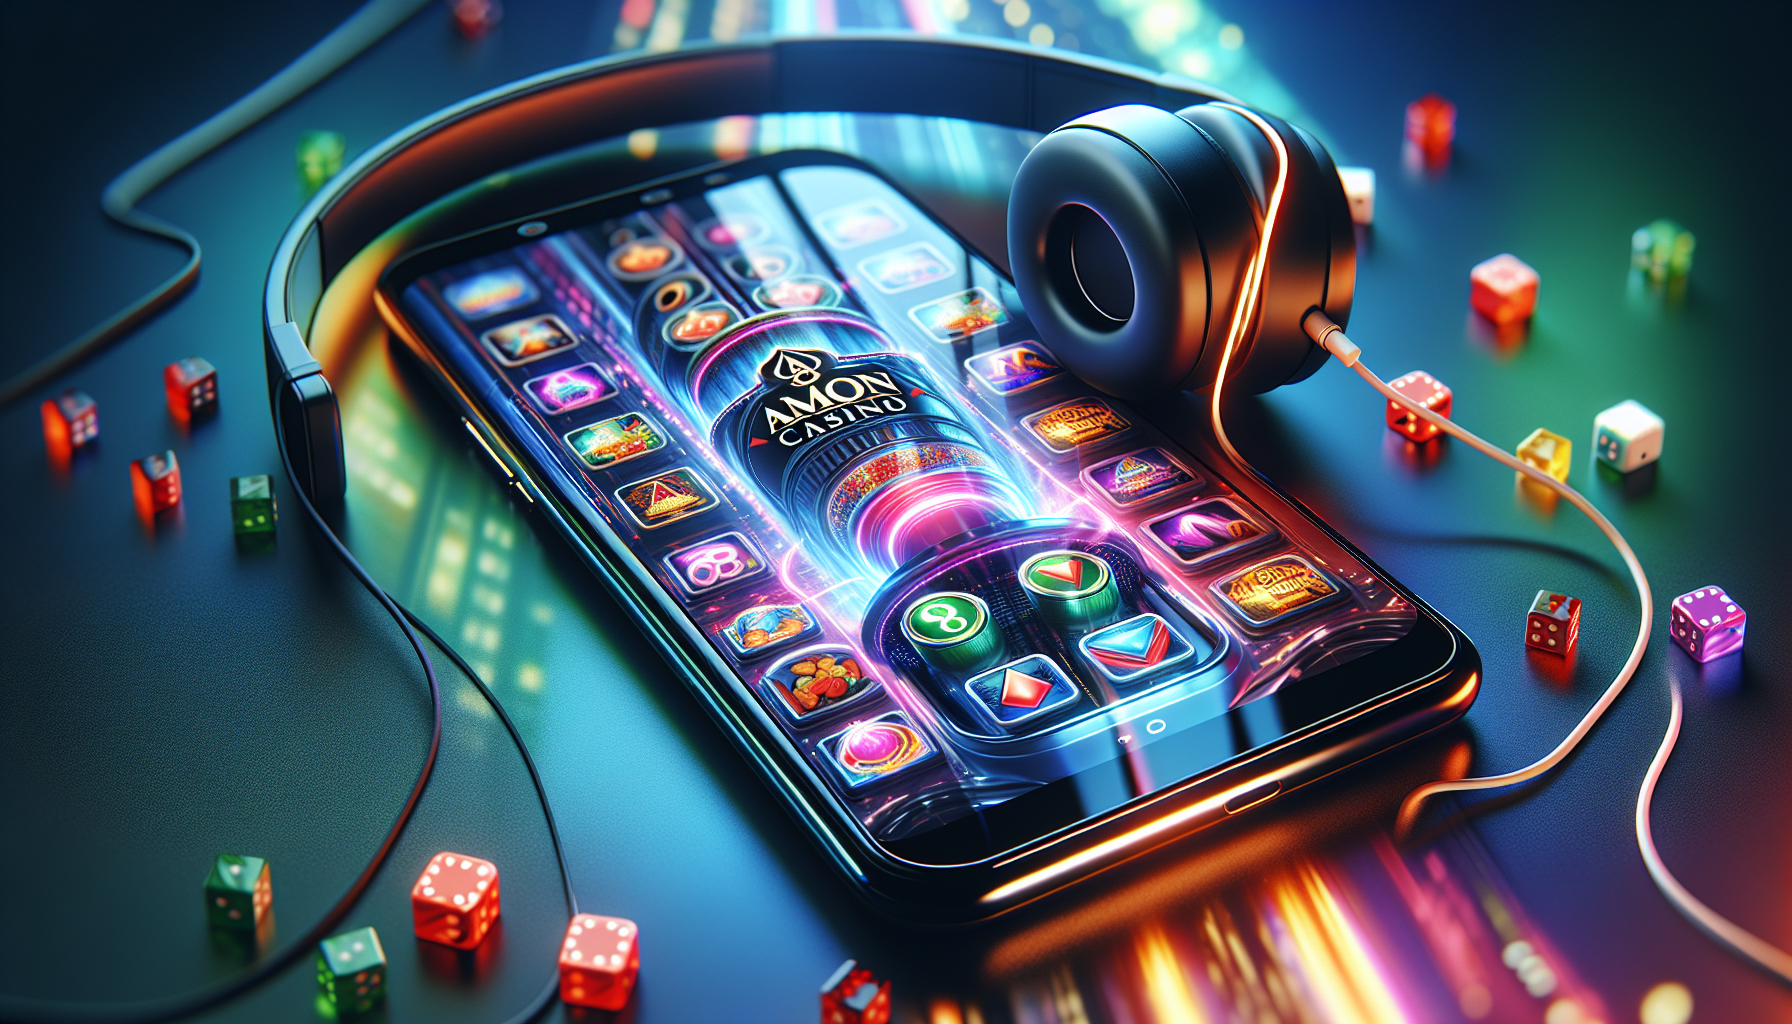 La Version Mobile d'Amon Casino : Jeu Nomade, illustration d'un smartphone avec des icônes de jeux